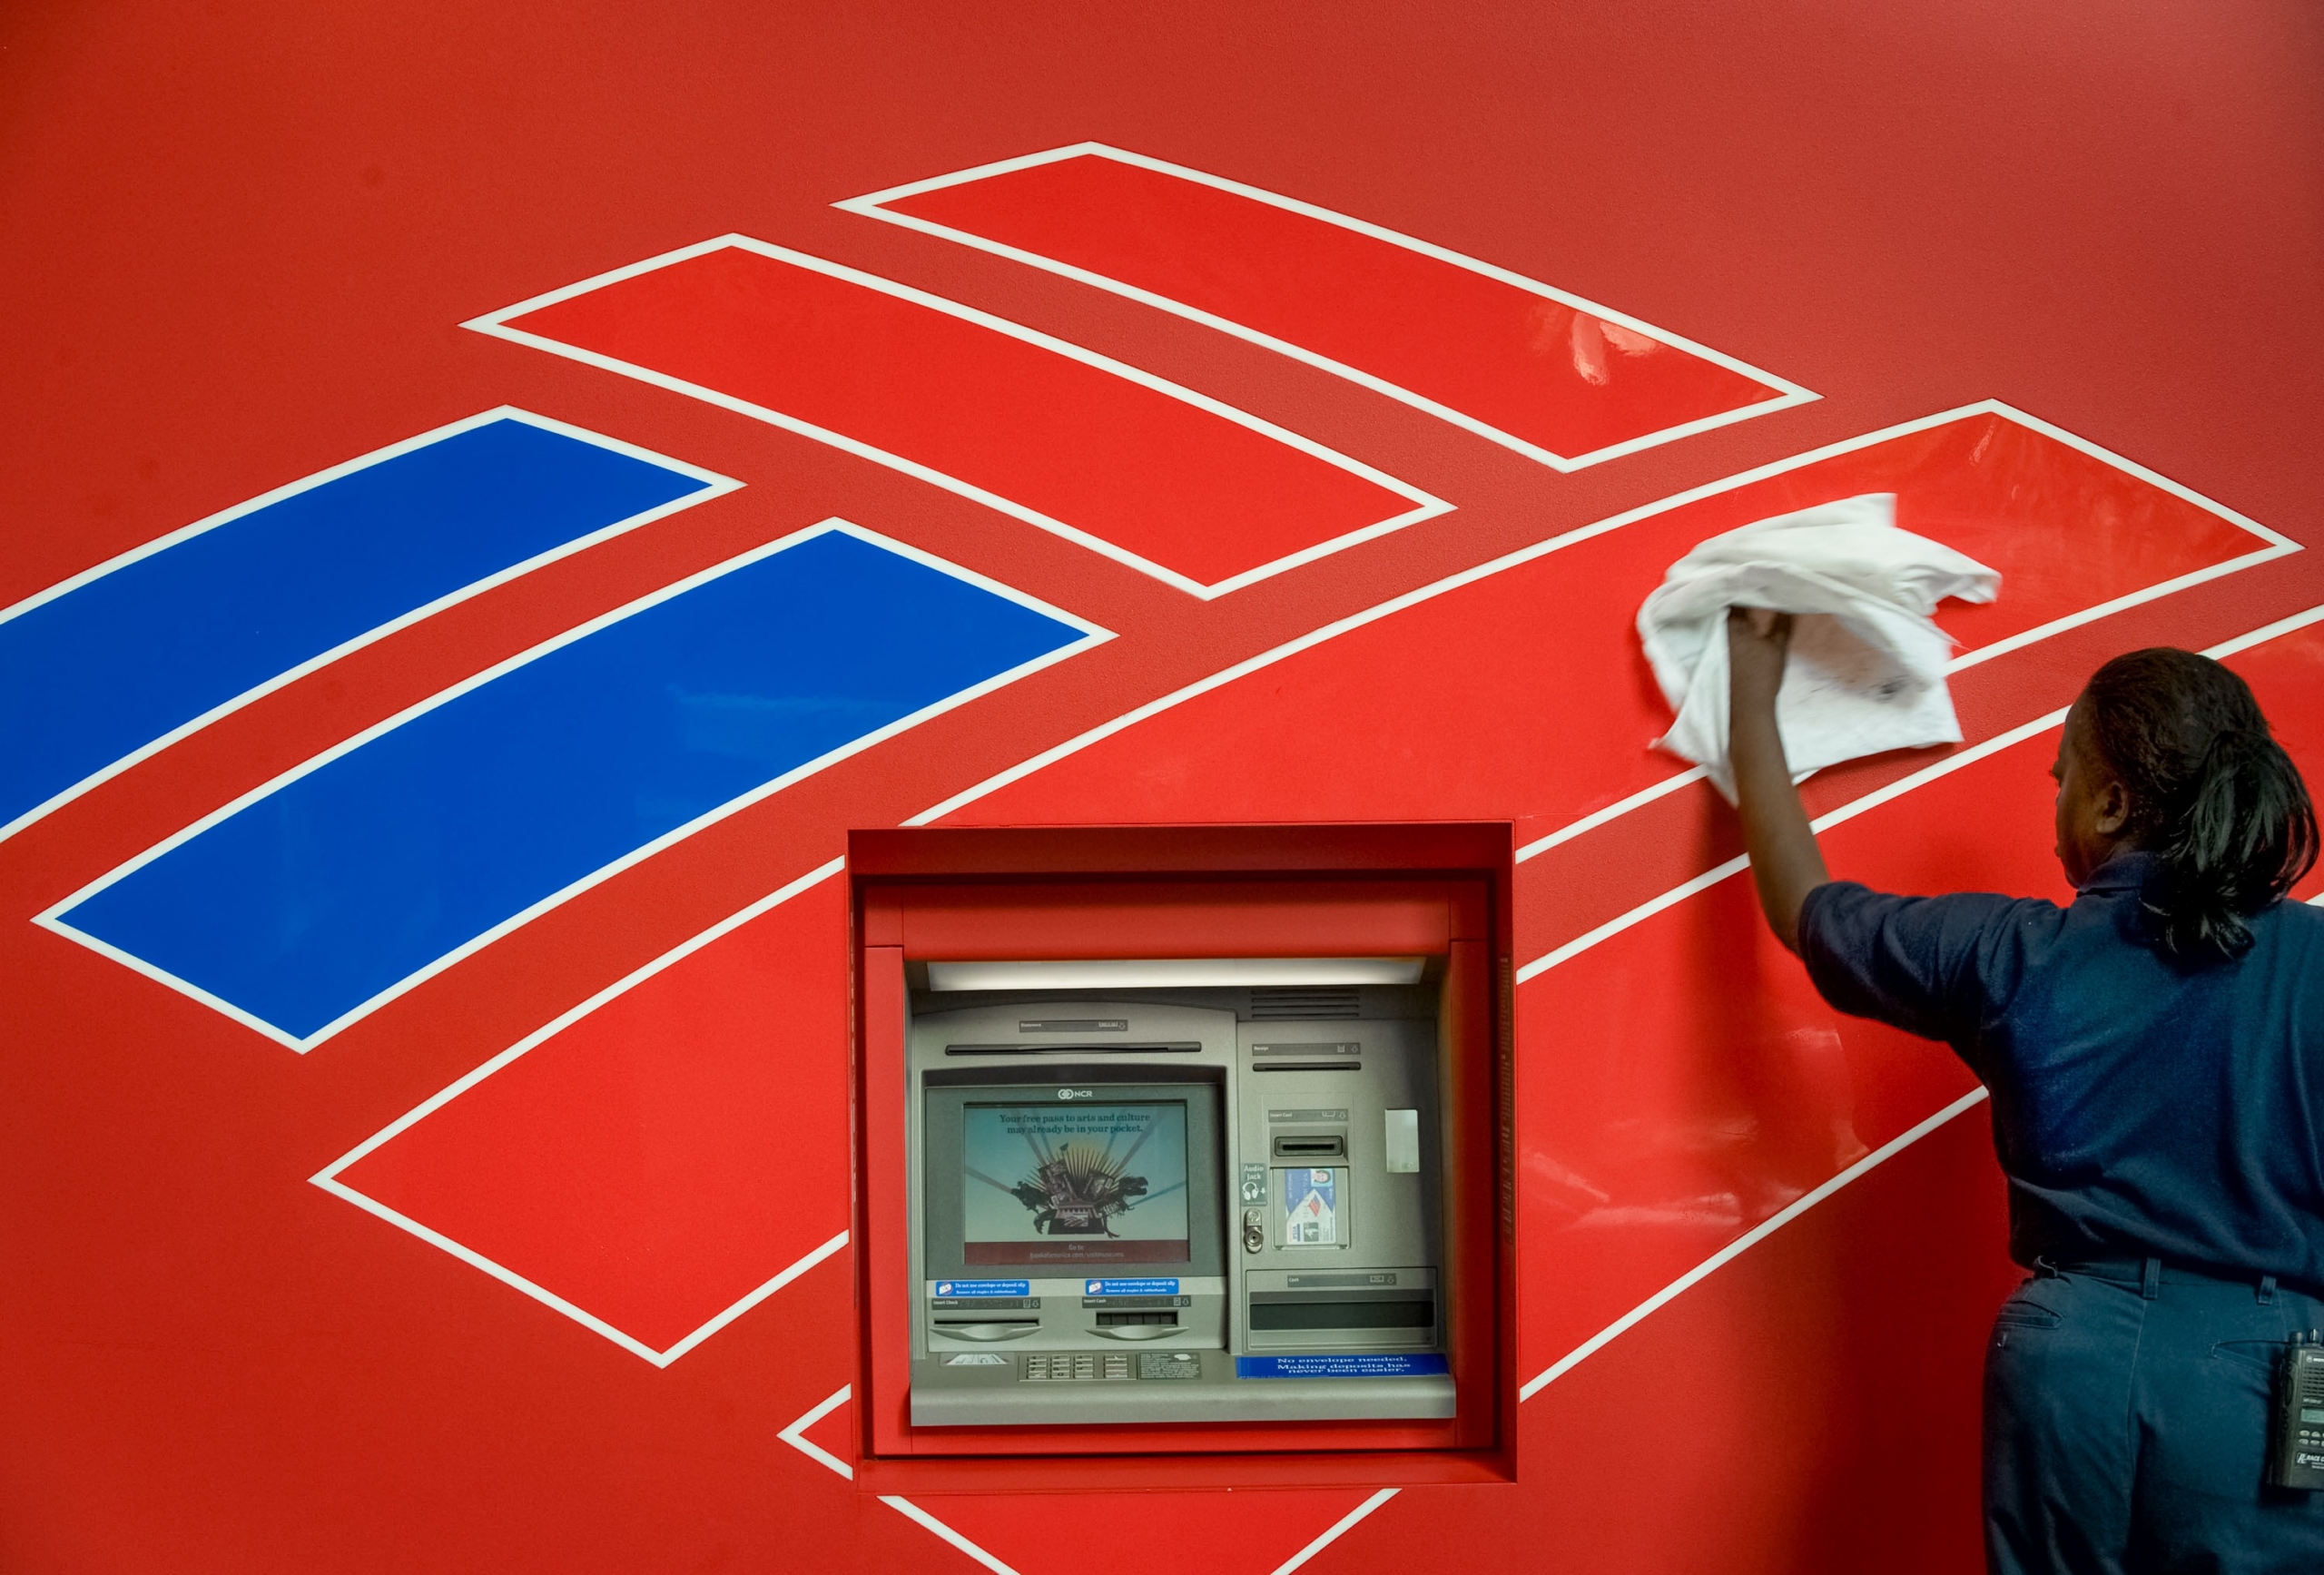 Một nhân viên lau chùi máy ATM đối diện với trụ sở chính của Bank of America ở Charlotte, North Carolina, vào ngày 15/09/2008. Ông Eastman được cho là đã bị Bank of America đóng tài khoản ngân hàng. (Ảnh: Davis Turner/Getty Images)